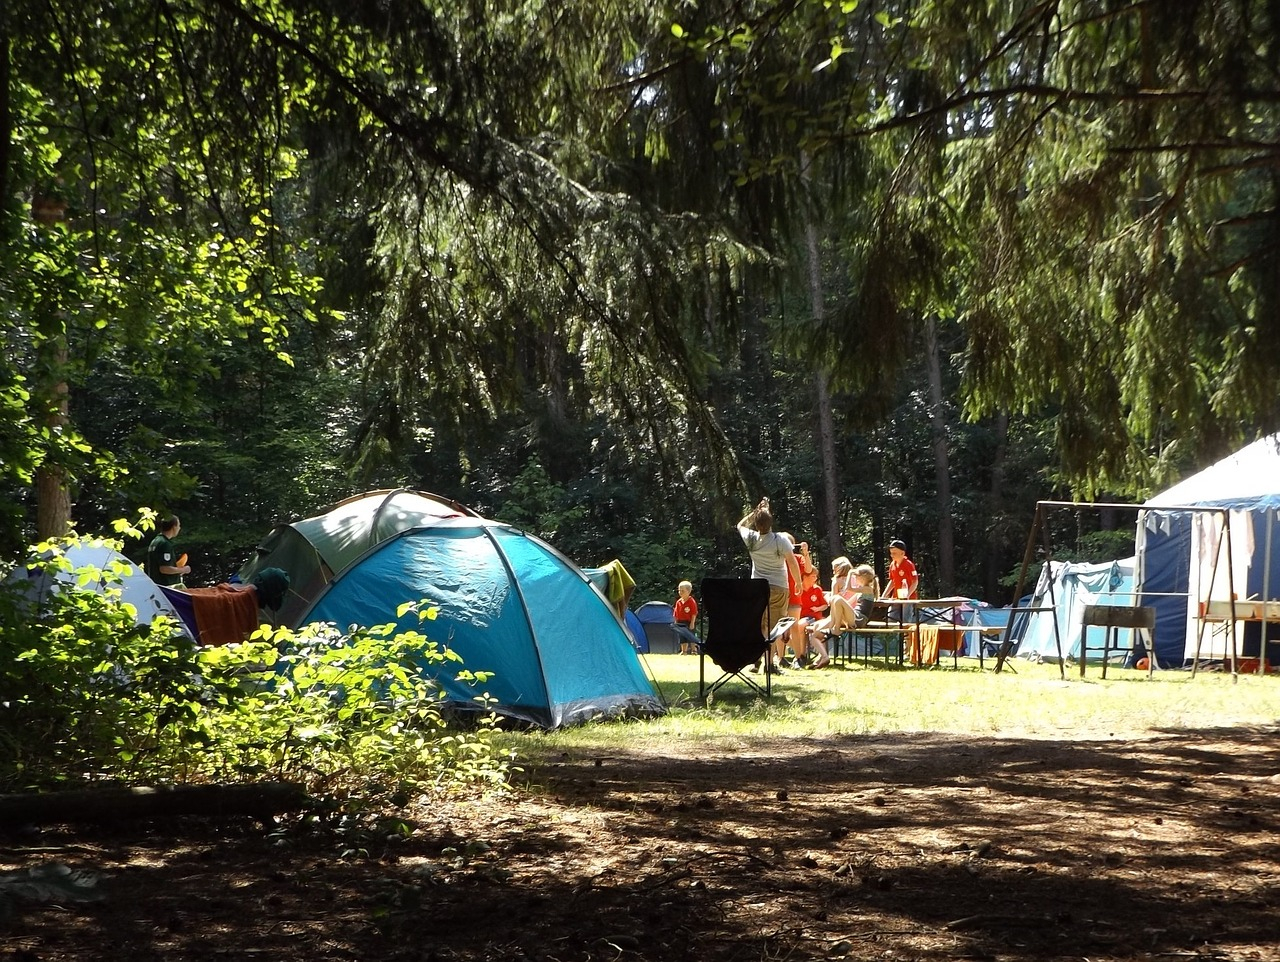 Vacanze in campeggio, 10 consigli per organizzarle al meglio